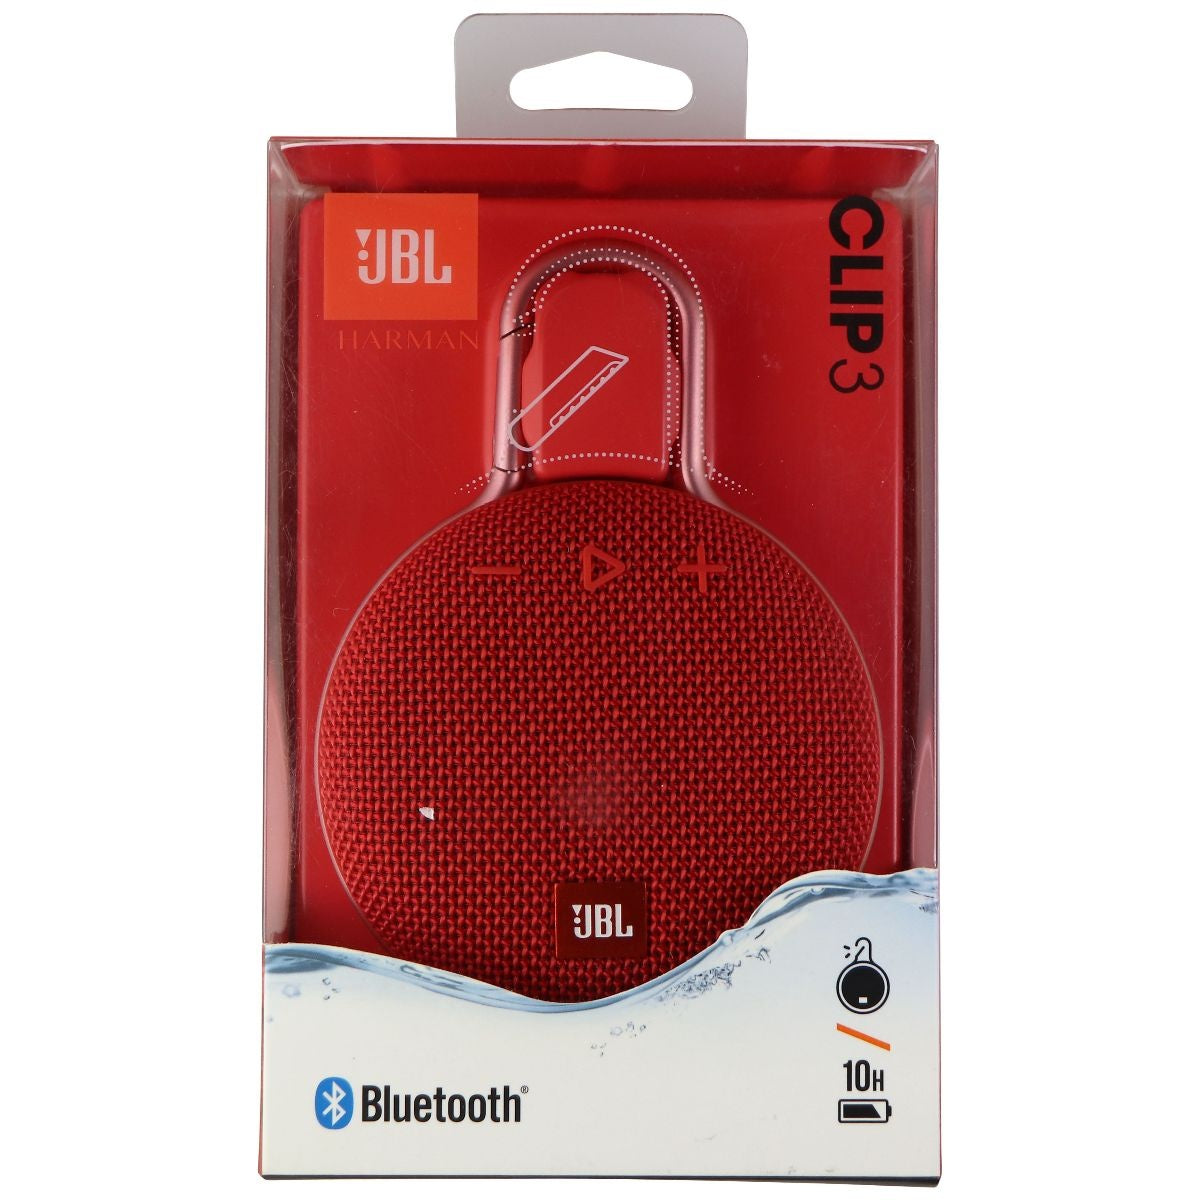 JBL Clip 3 Series Portable WaterProof Bluetooth Speaker - Red Cell Phone - Audio Docks & Speakers JBL    - Simple Cell Bulk Wholesale Pricing - USA Seller